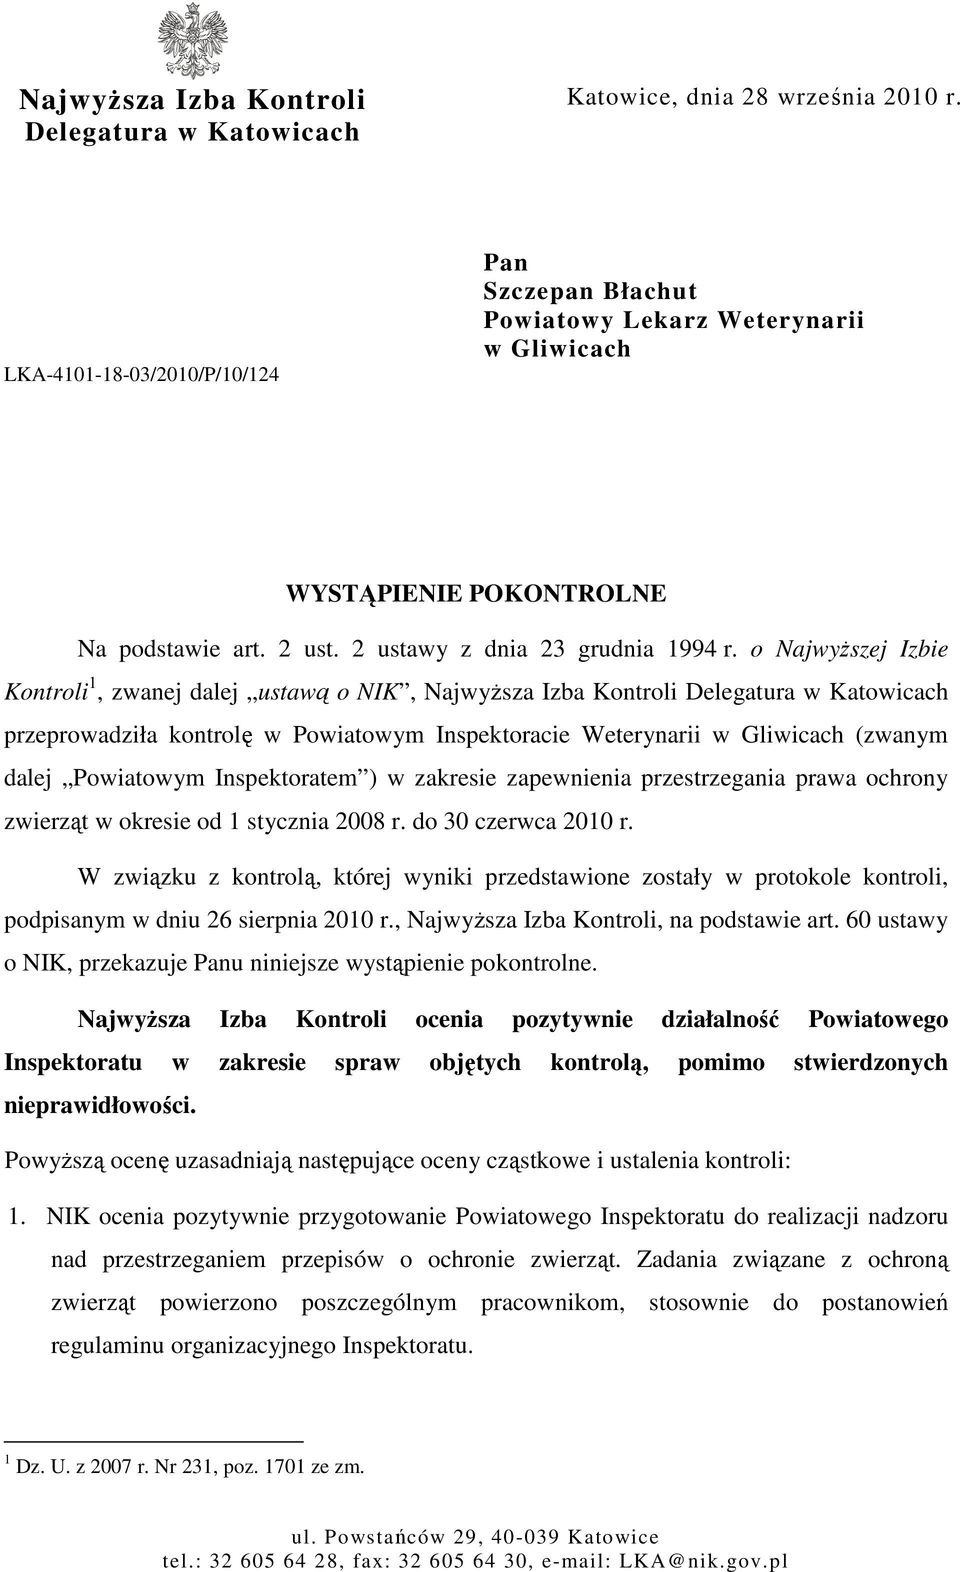 o NajwyŜszej Izbie Kontroli 1, zwanej dalej ustawą o NIK, NajwyŜsza Izba Kontroli Delegatura w Katowicach przeprowadziła kontrolę w Powiatowym Inspektoracie Weterynarii w Gliwicach (zwanym dalej